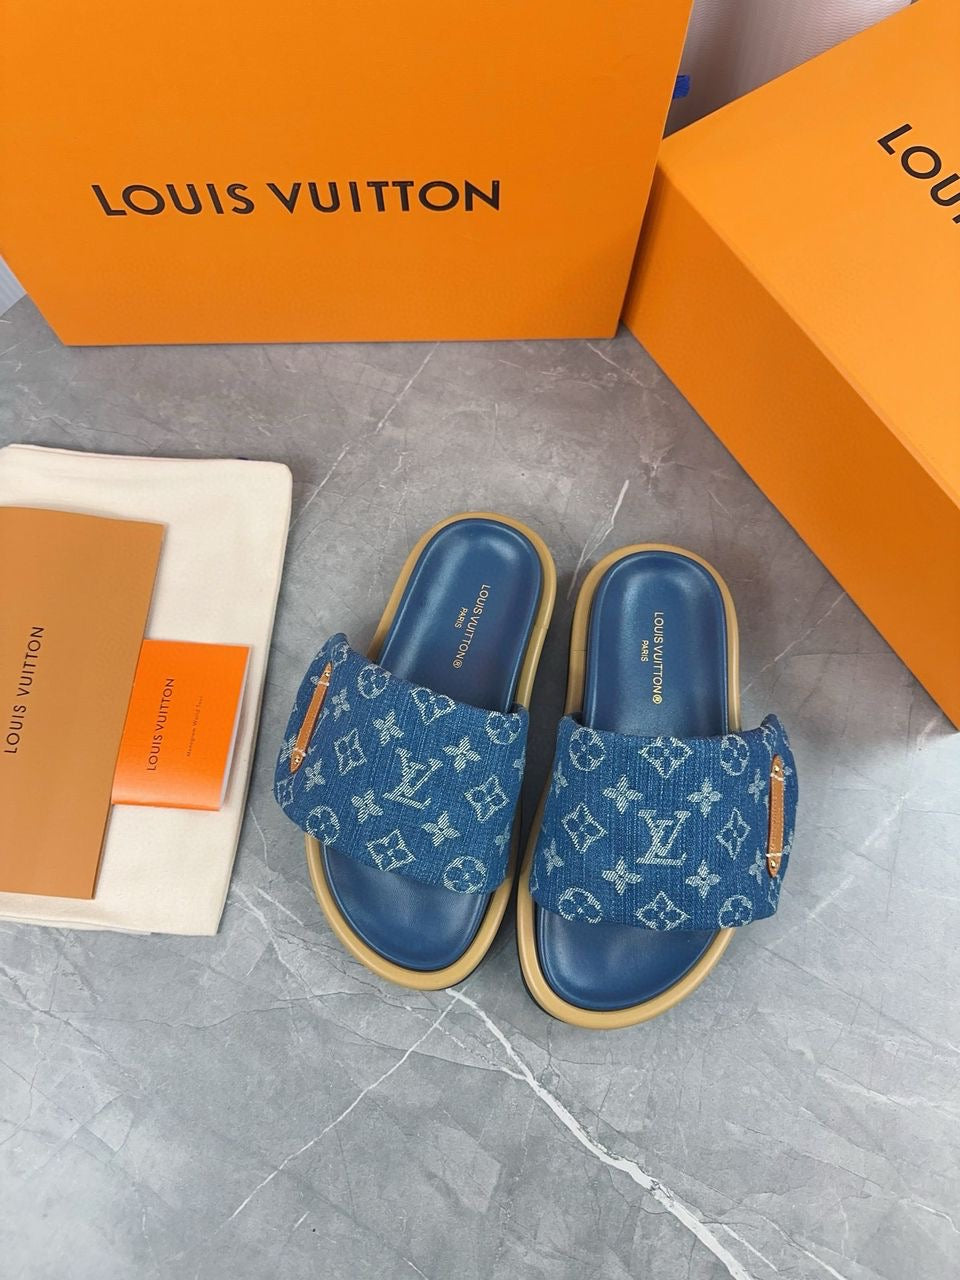 Louis sandals